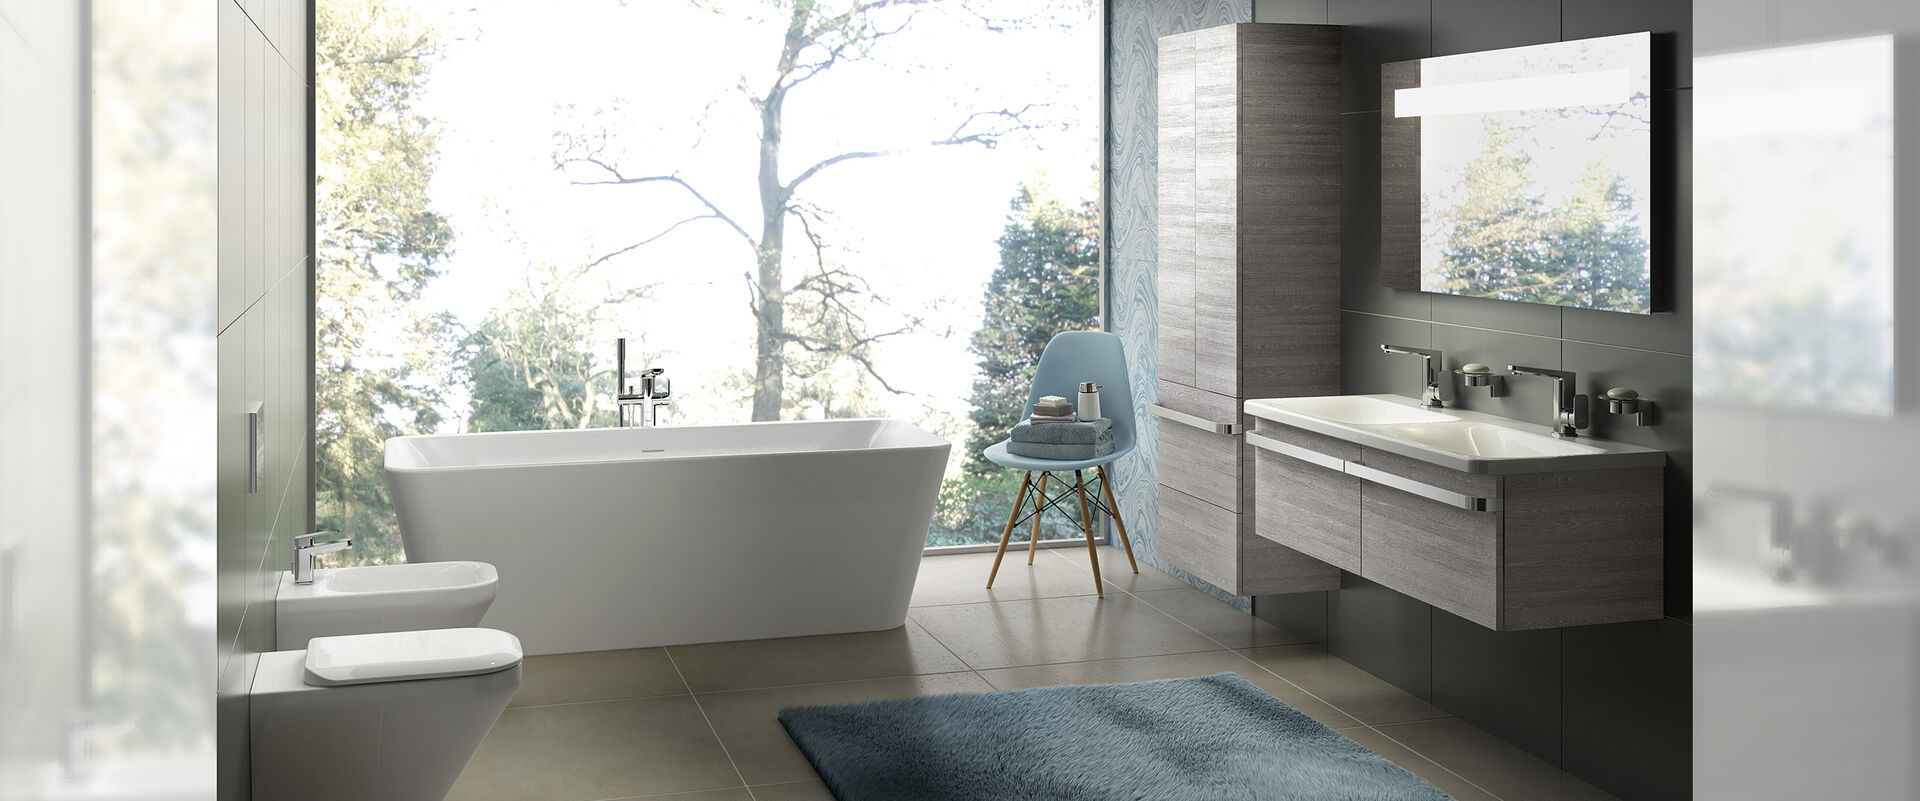 Badambiente mit freistehender Badewanne vor großem Fenster. Doppelwaschbecken und Badmöbeln aus Holz.